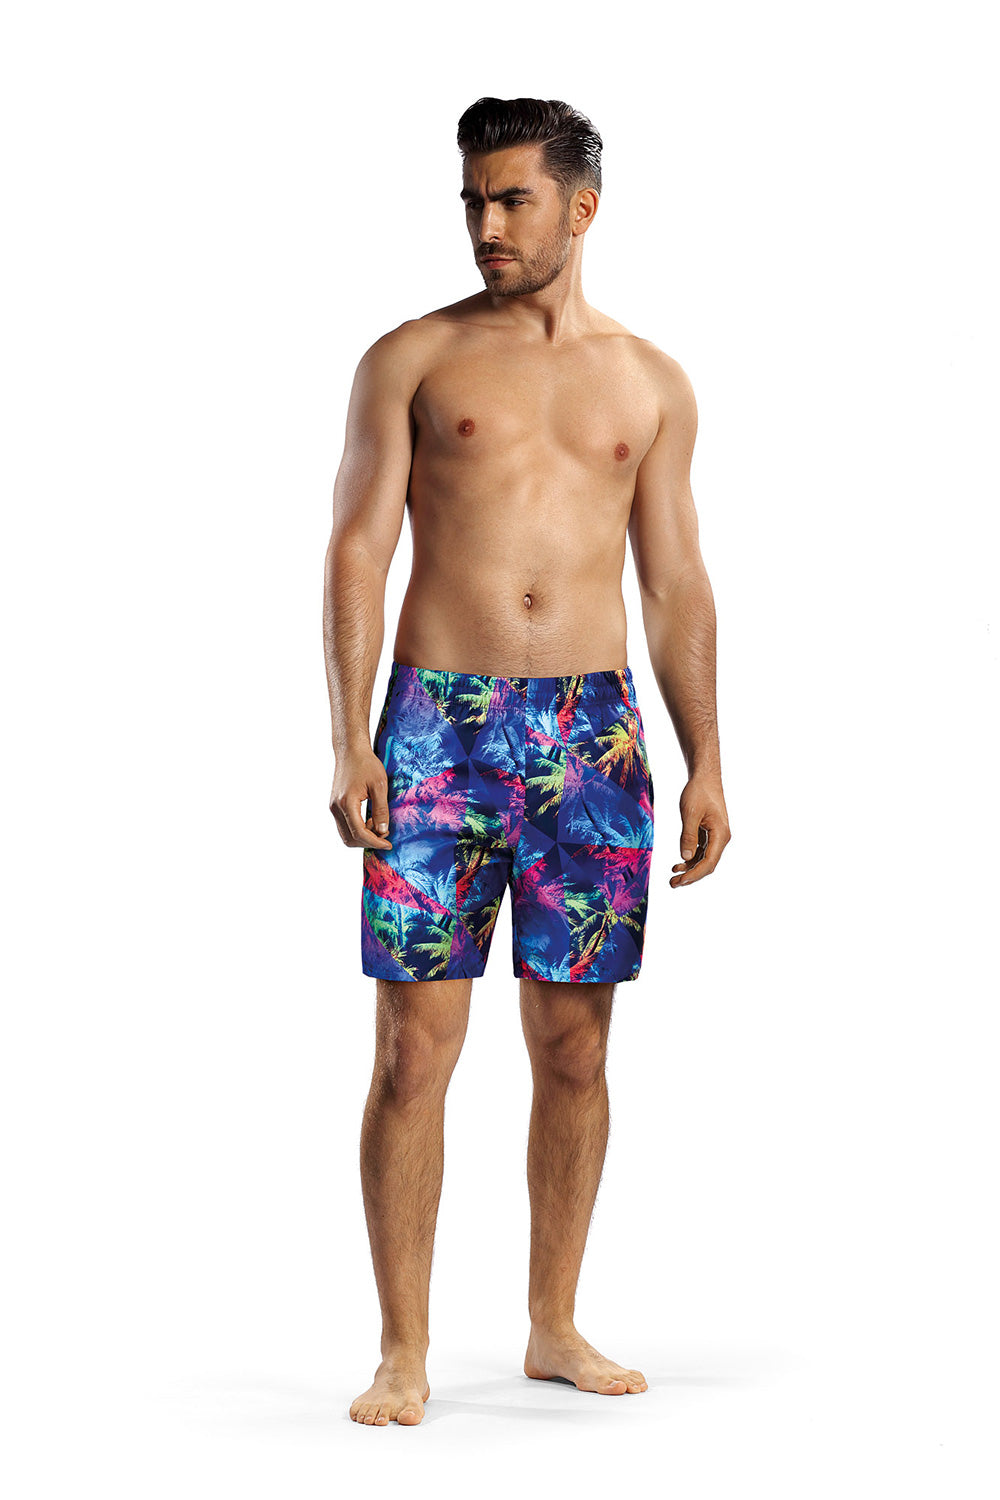 Swimming trunks model 182805 Elsy Style Boxers Shorts, Slips, Swimming Briefs for Men